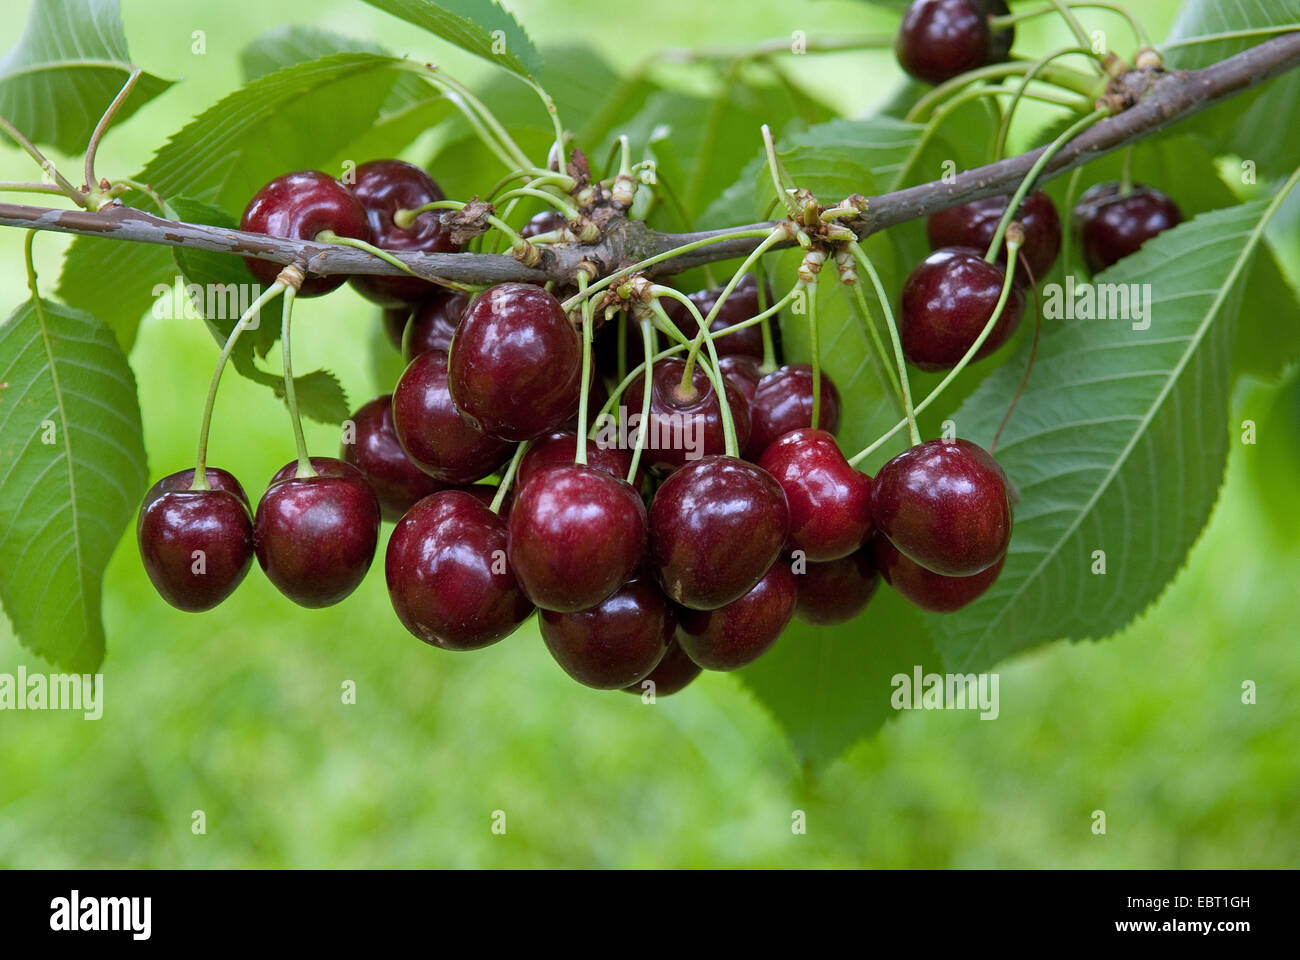 Cherry tree, Sweet cherry (Prunus avium 'Kanada', Prunus avium Kanada), cultivar Kanada, cherries on a tree Stock Photo